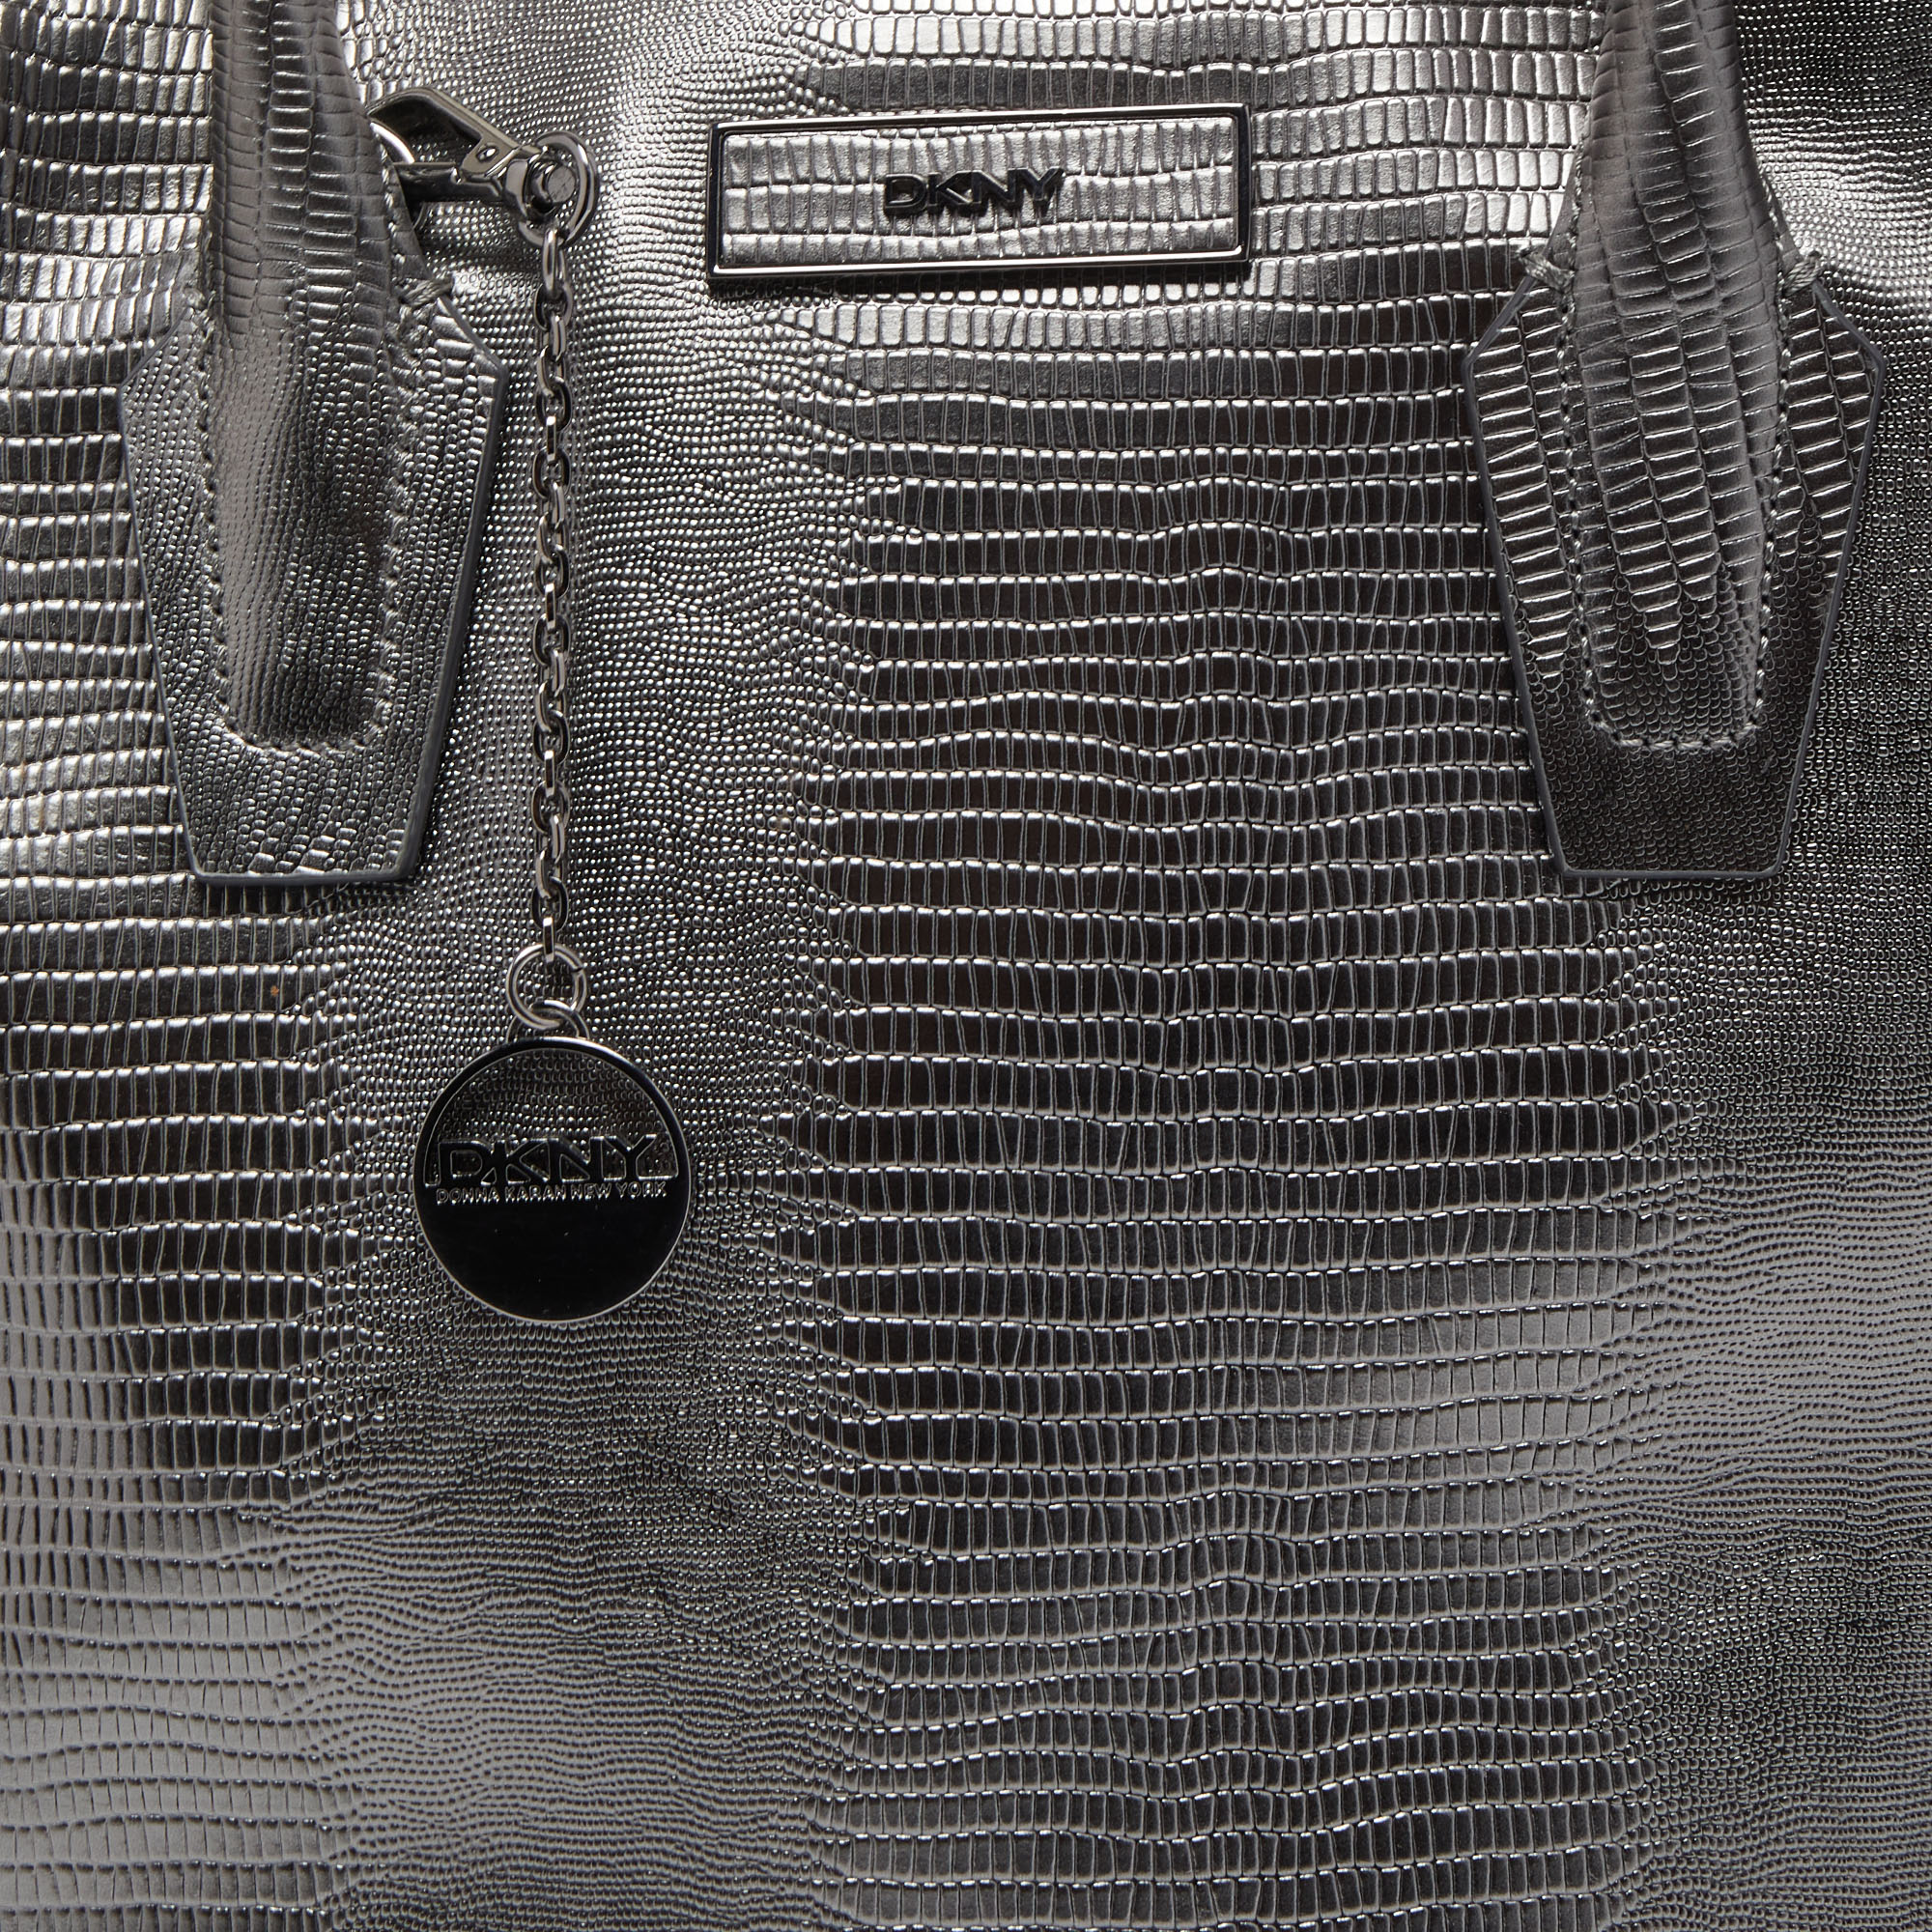 DKNY Metallic Dark Grey Lizard Embossed Leather Tote